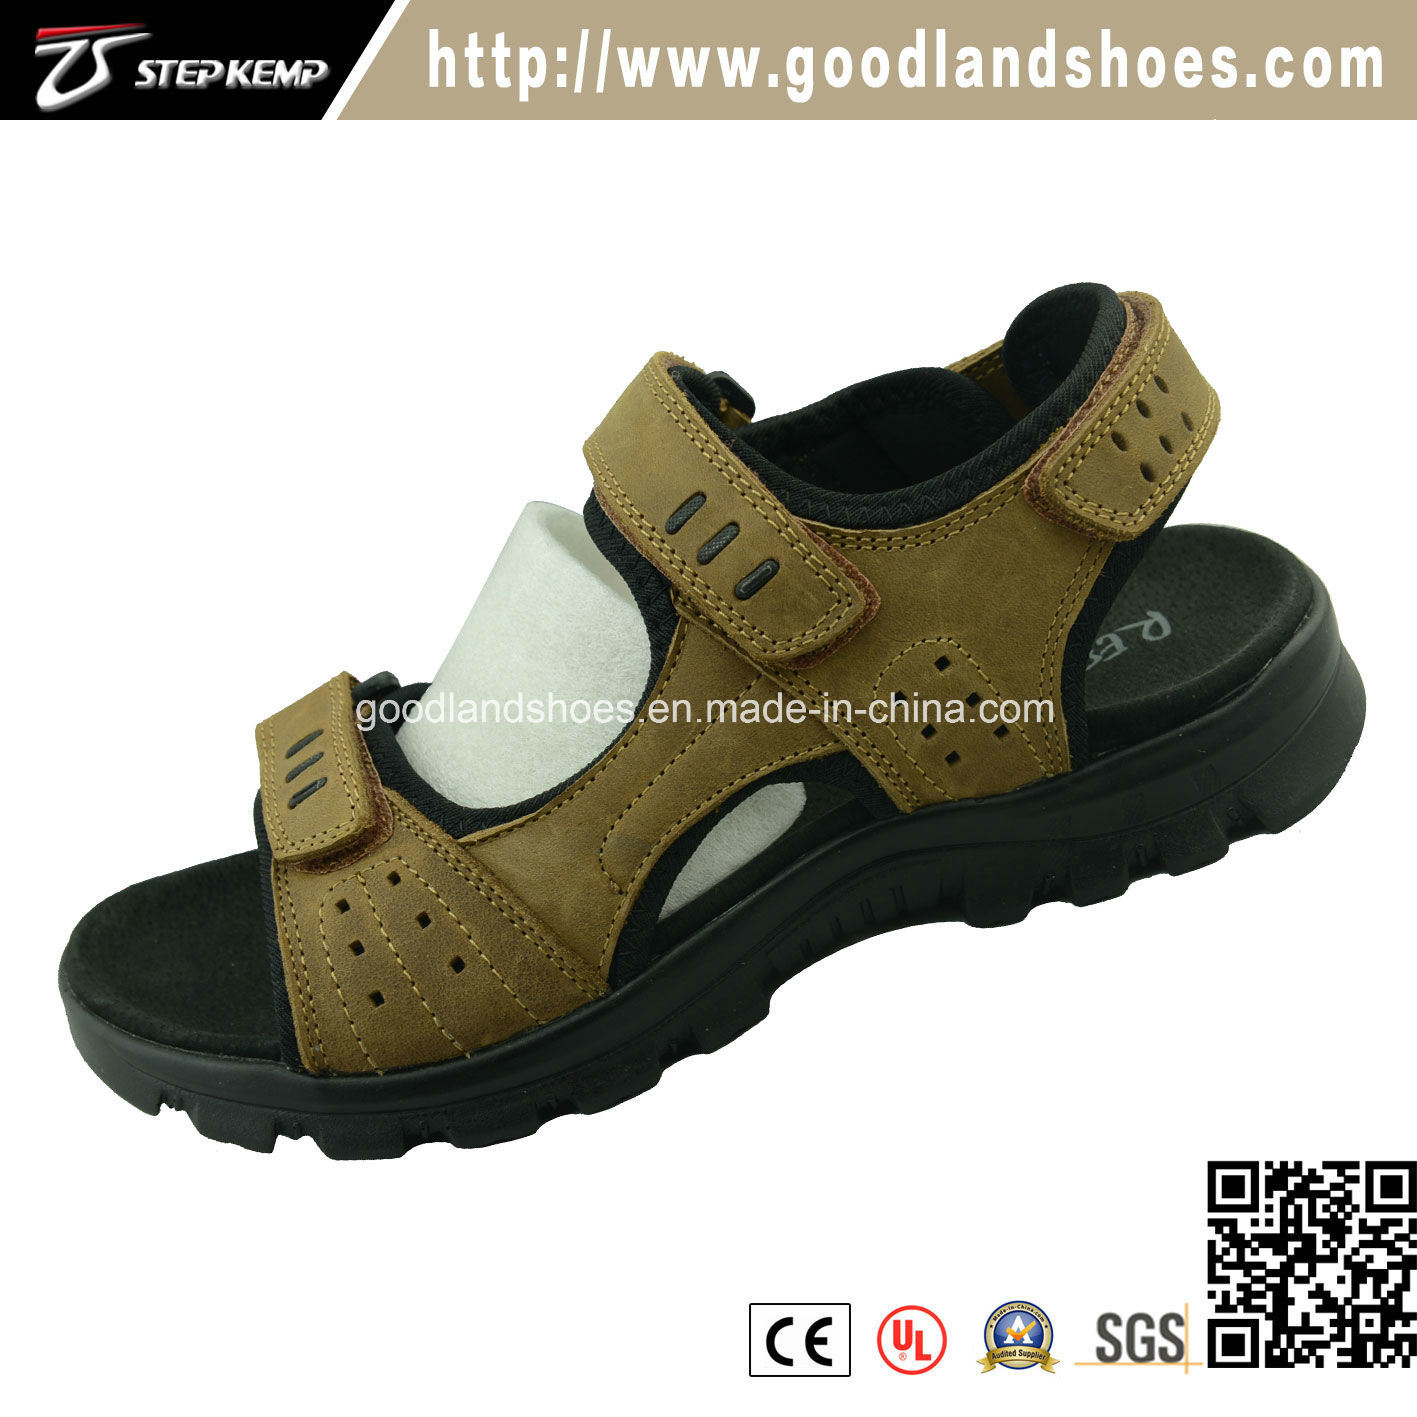 Top Leather Men's Sandal Shoes 20030